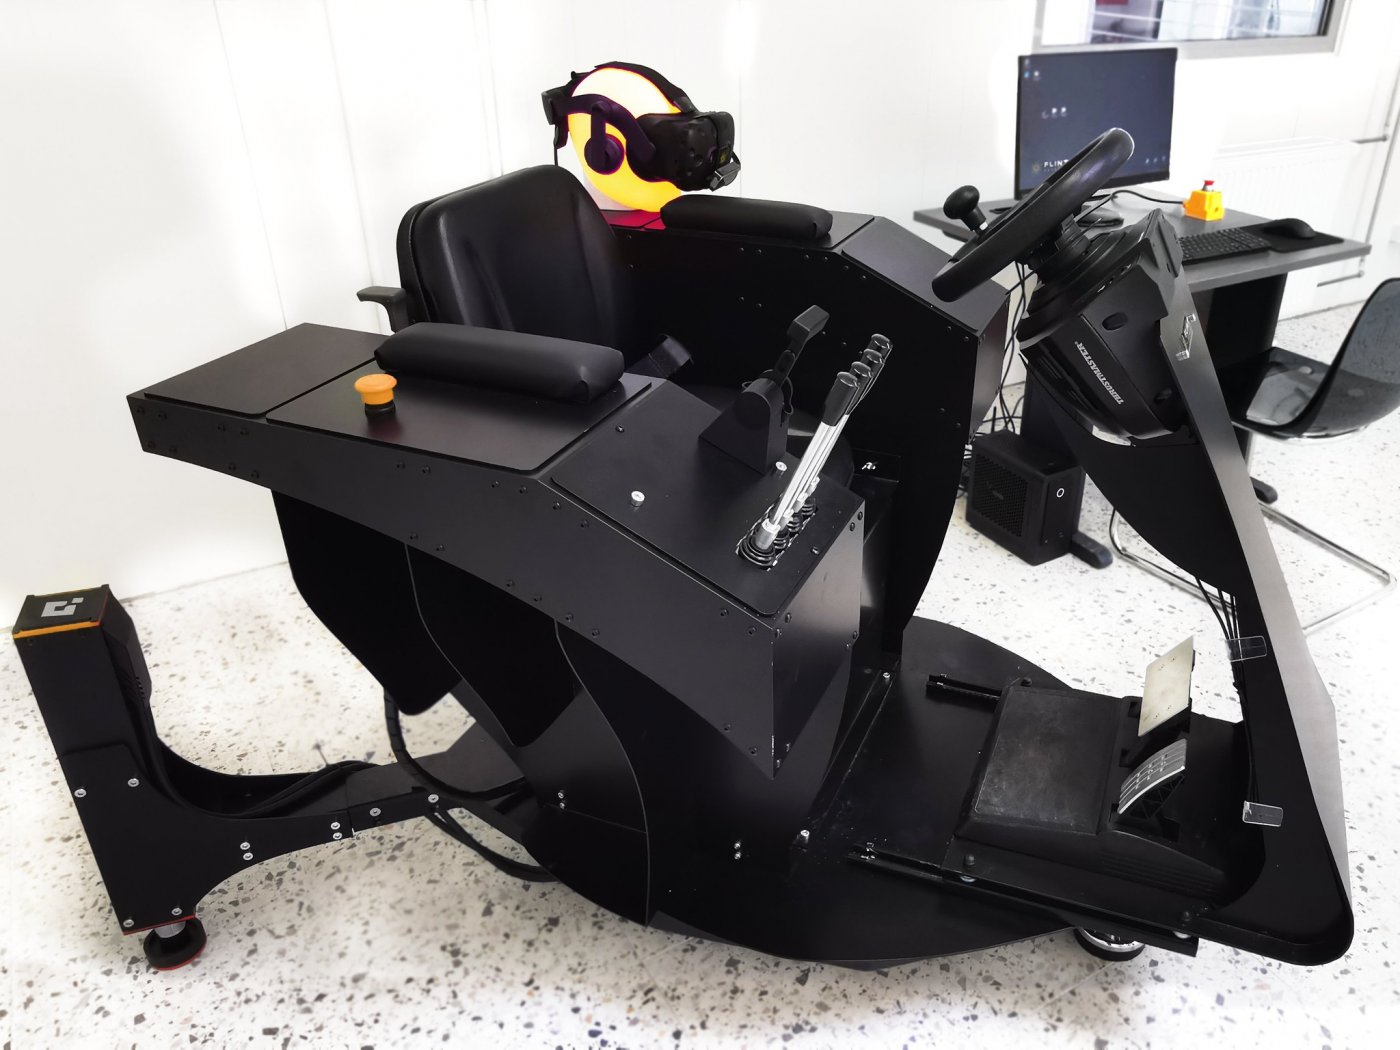 Tak wygląda przykładowy symulator VR - inżynierowie z Gdyni potrafią tak zaprojektować wirtualną rzeczywistość, aby zasiadając w fotelu można było poczuć się np. jak operator portowej suwnicy czy wózka widłowego, fot. facebook.com/FlintSystems